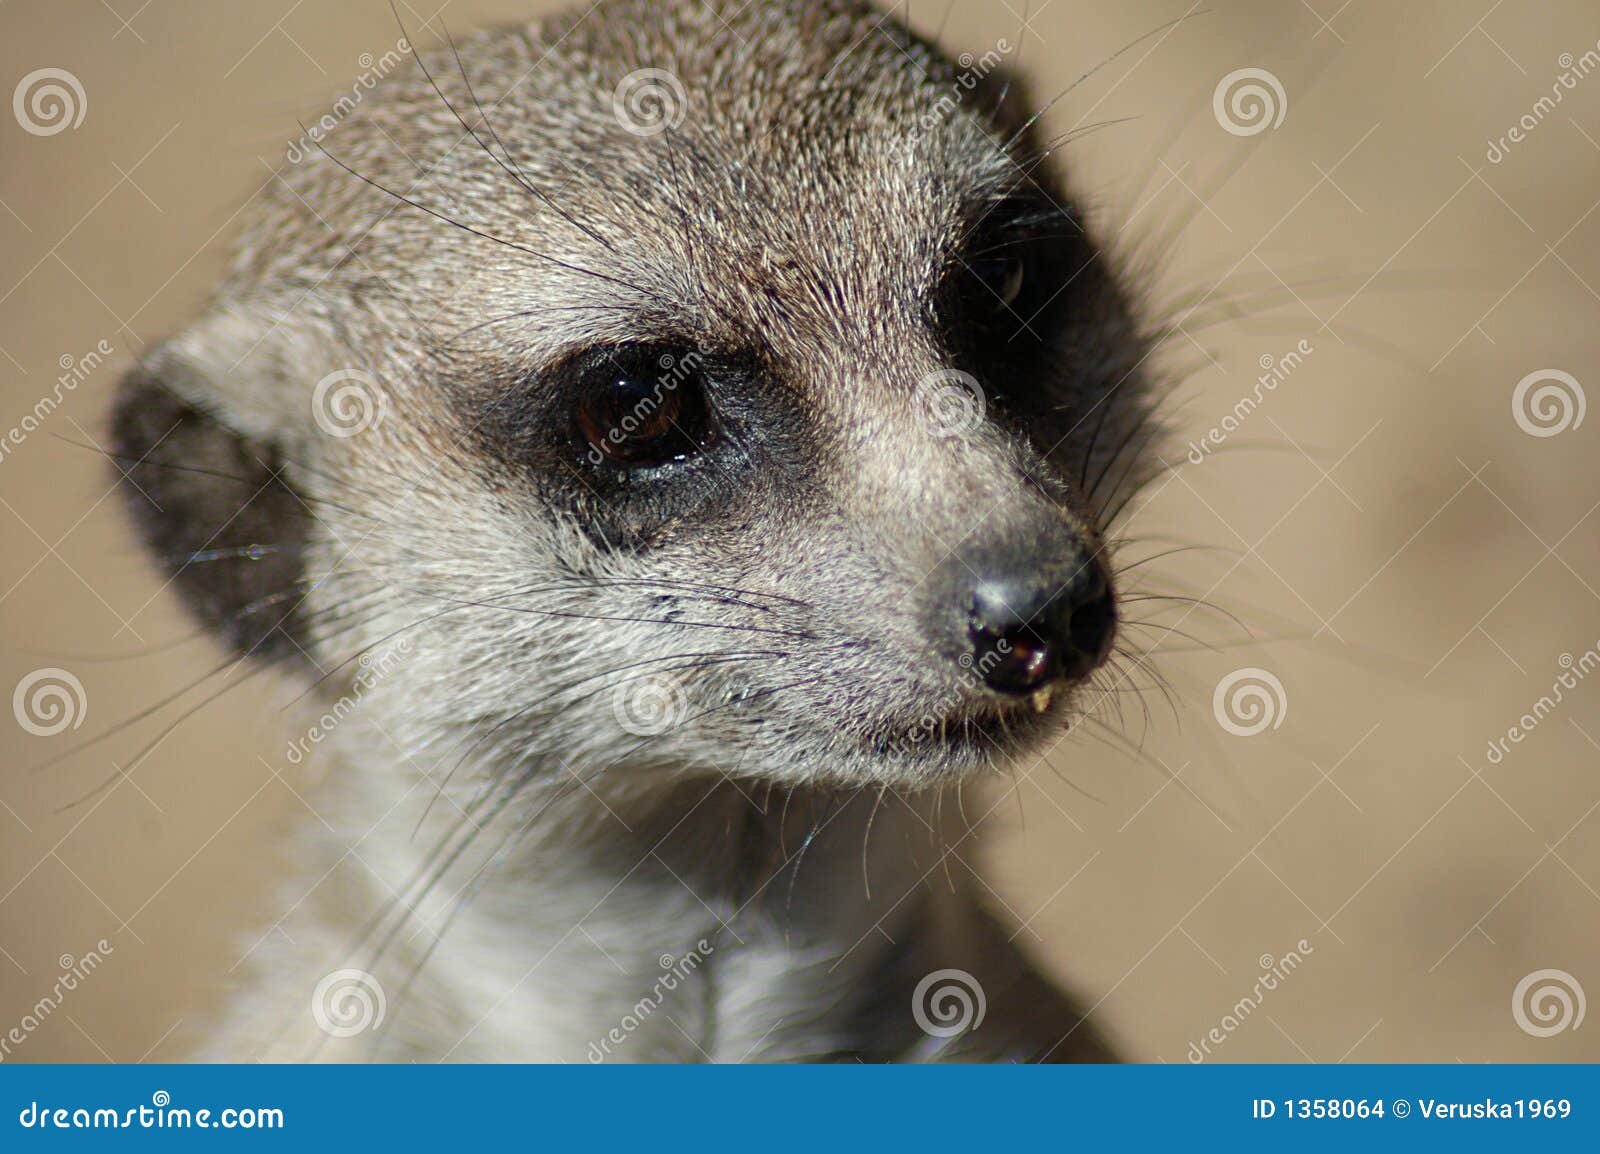 suricata meerkat